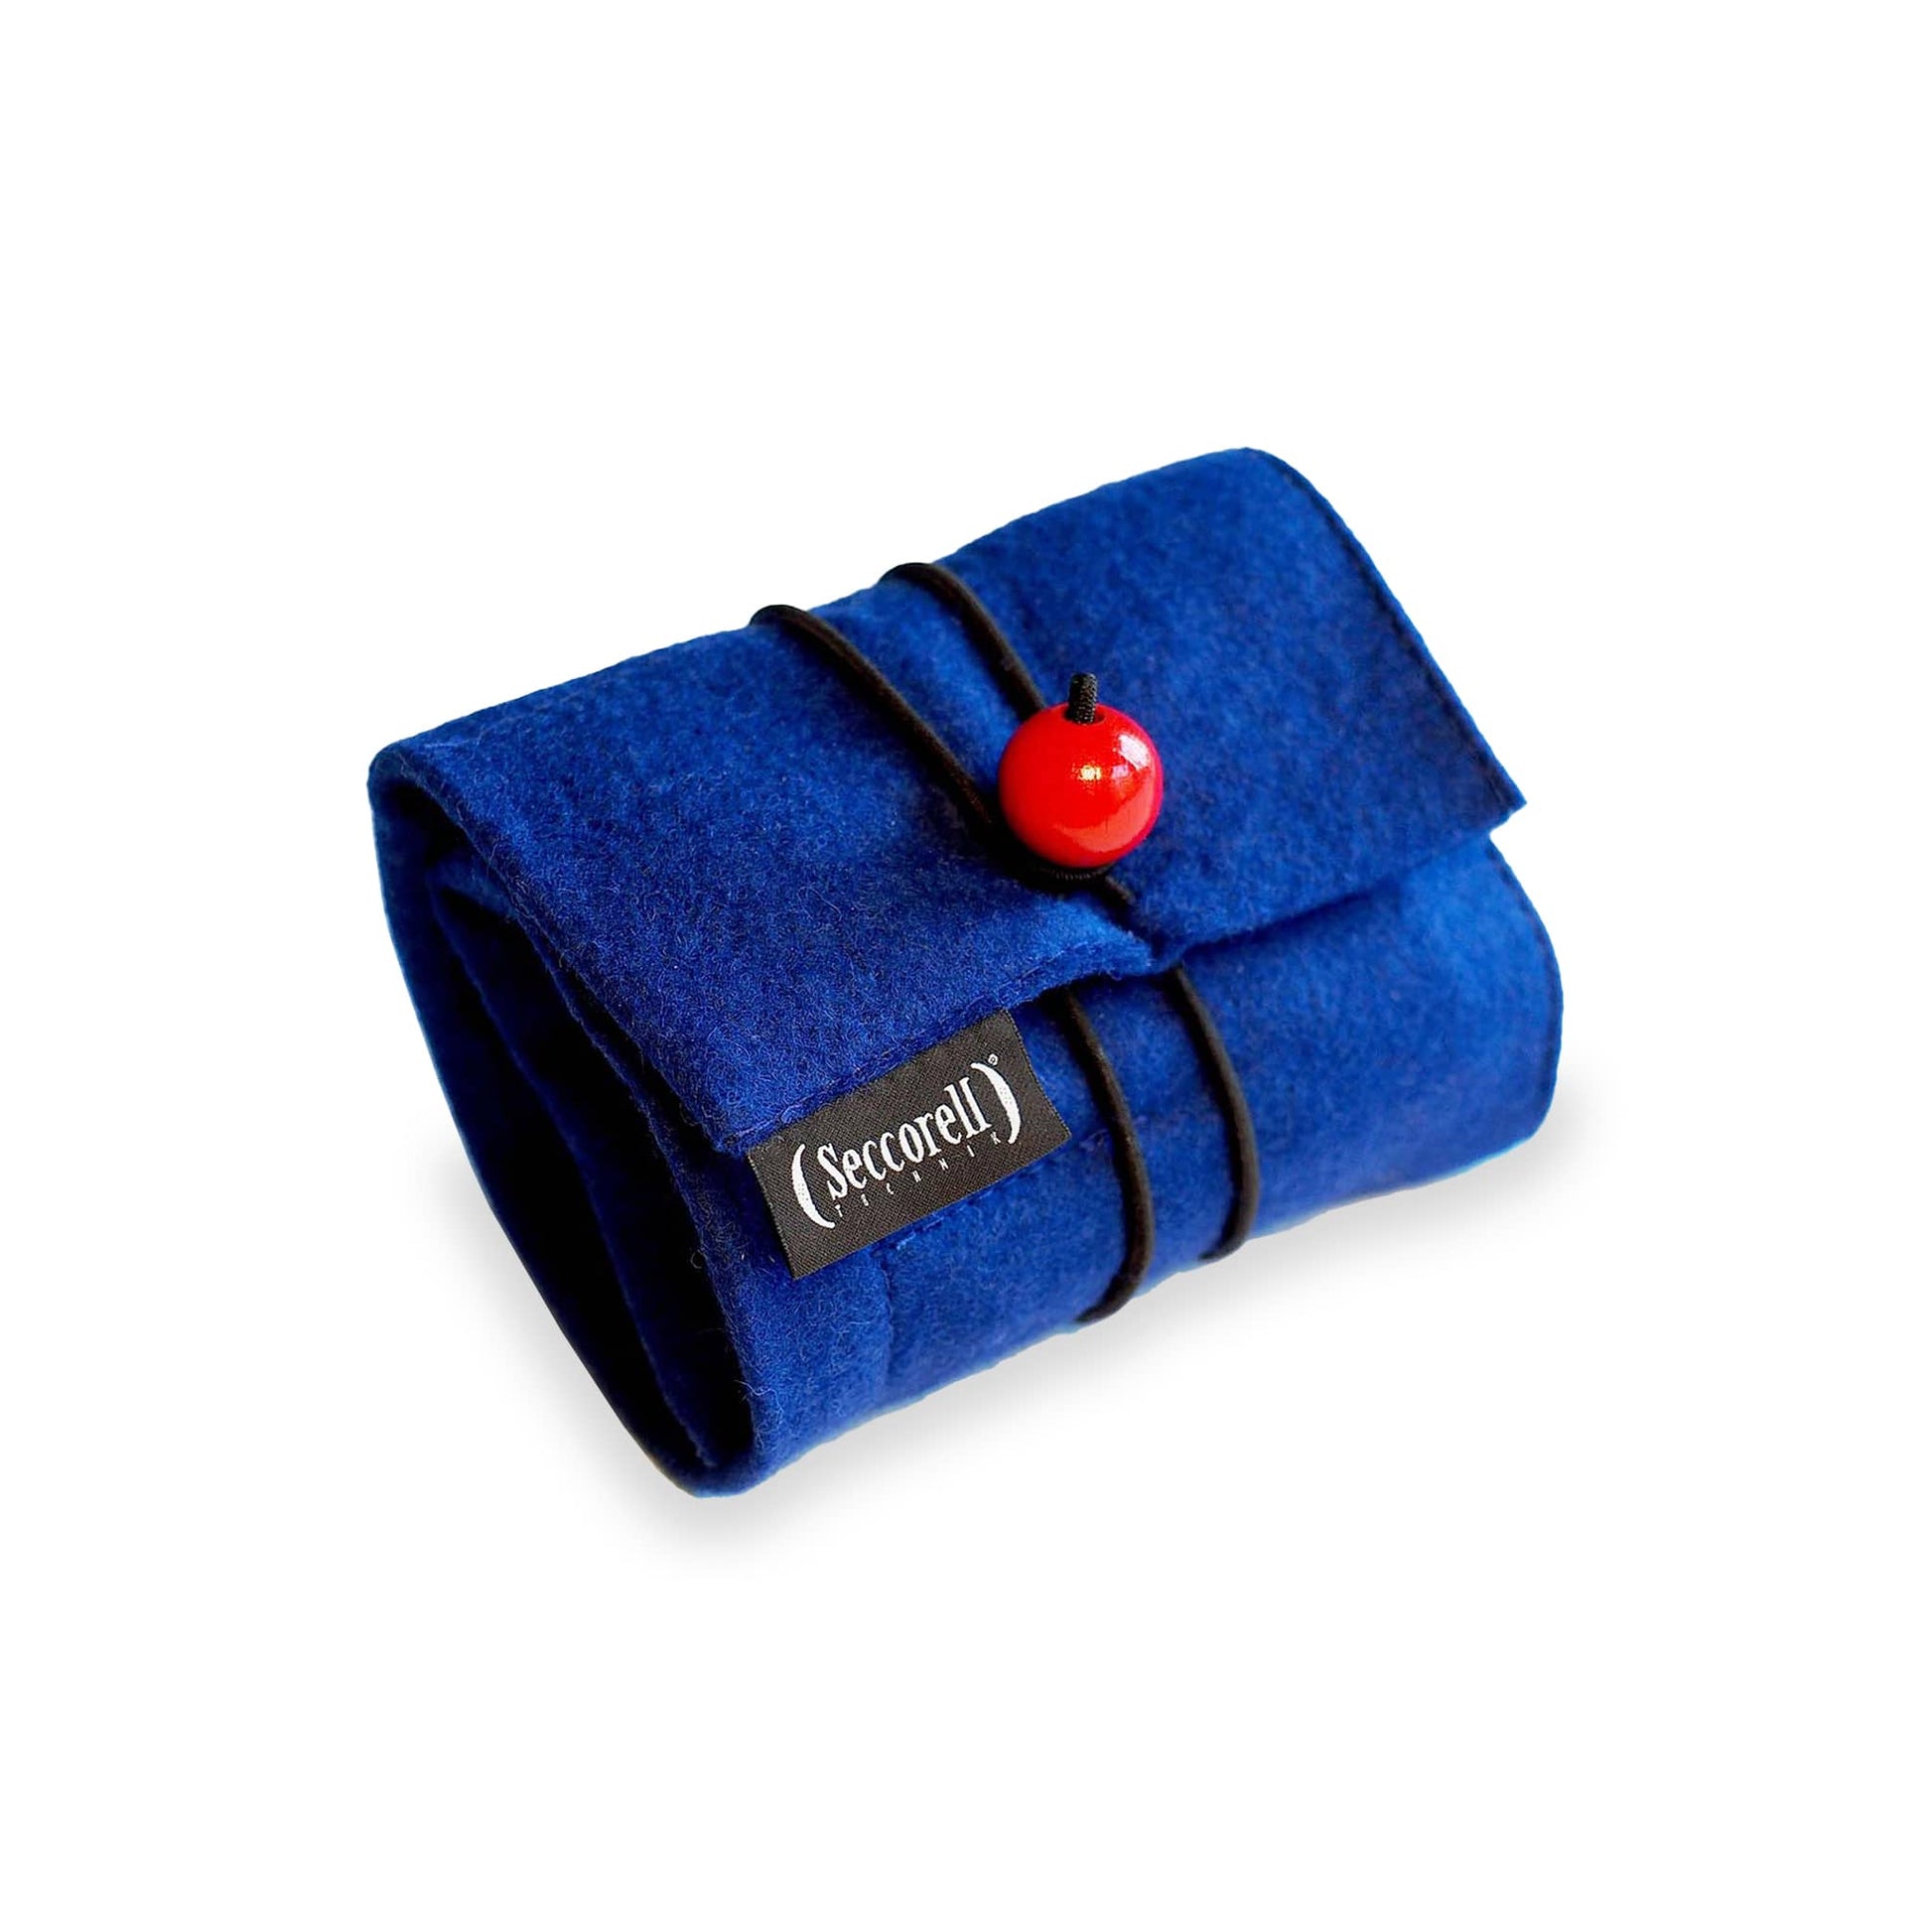 Seccorell Filz-Rolltasche in Blau mit Gummikordel und roter Holzperle, inklusive Farbstäbchen, Reibeblock, Naturbürste und Zubehörfach.